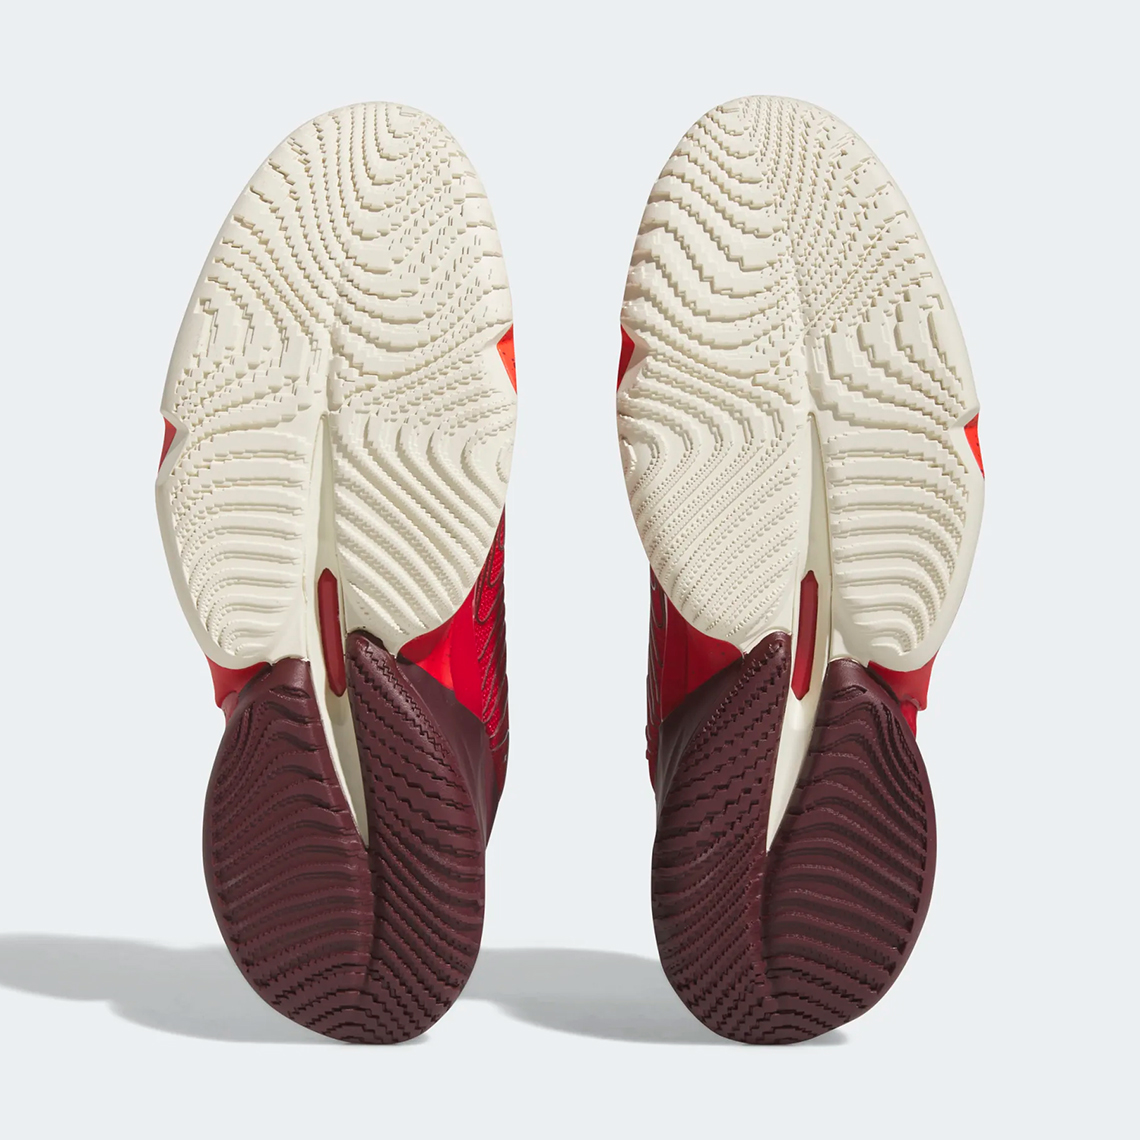 adidas don issue 4 better scarlet cream white HR0725 6